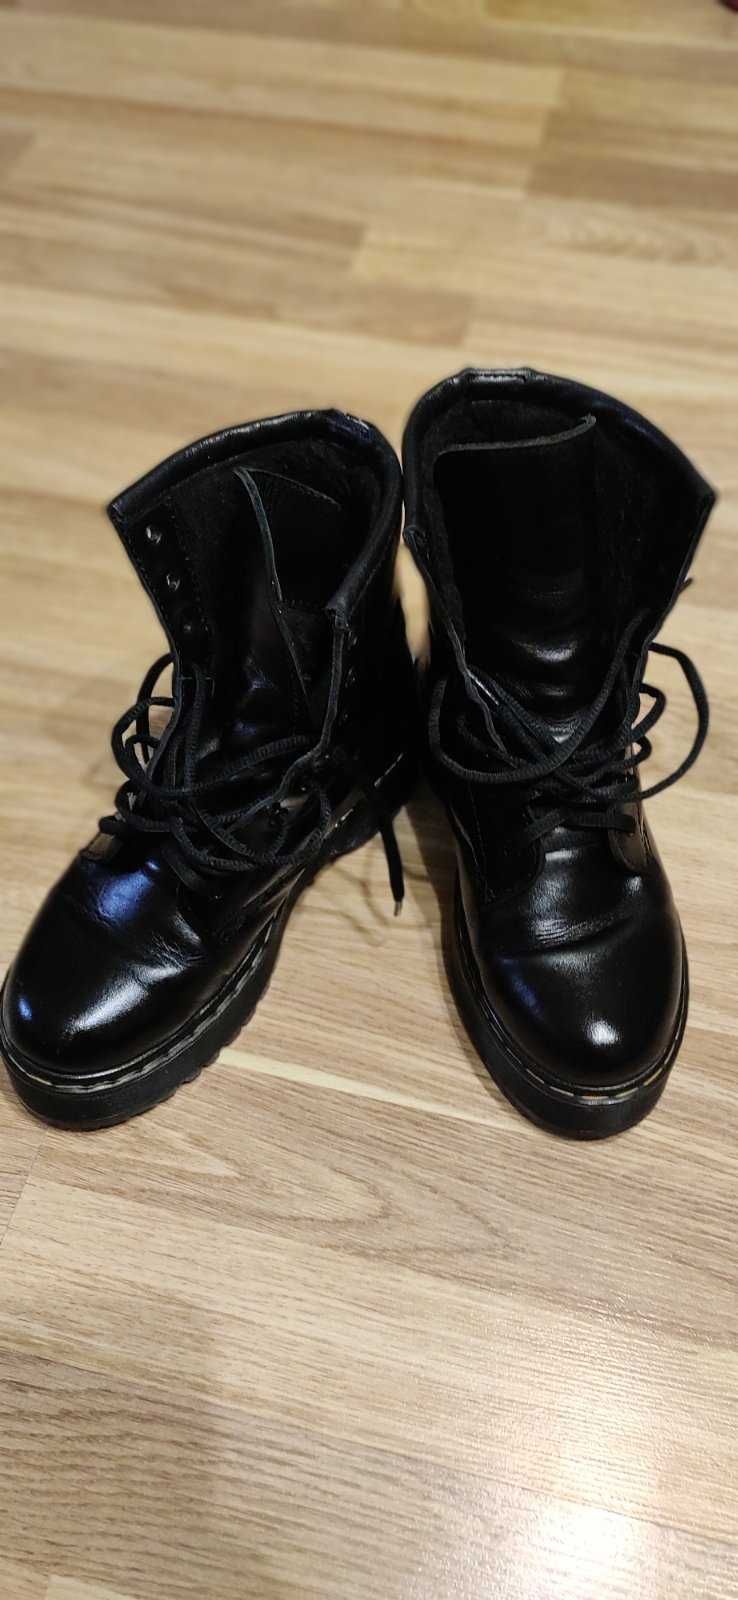 Зимние женские кожаные ботинки Dr. Martens размер 37